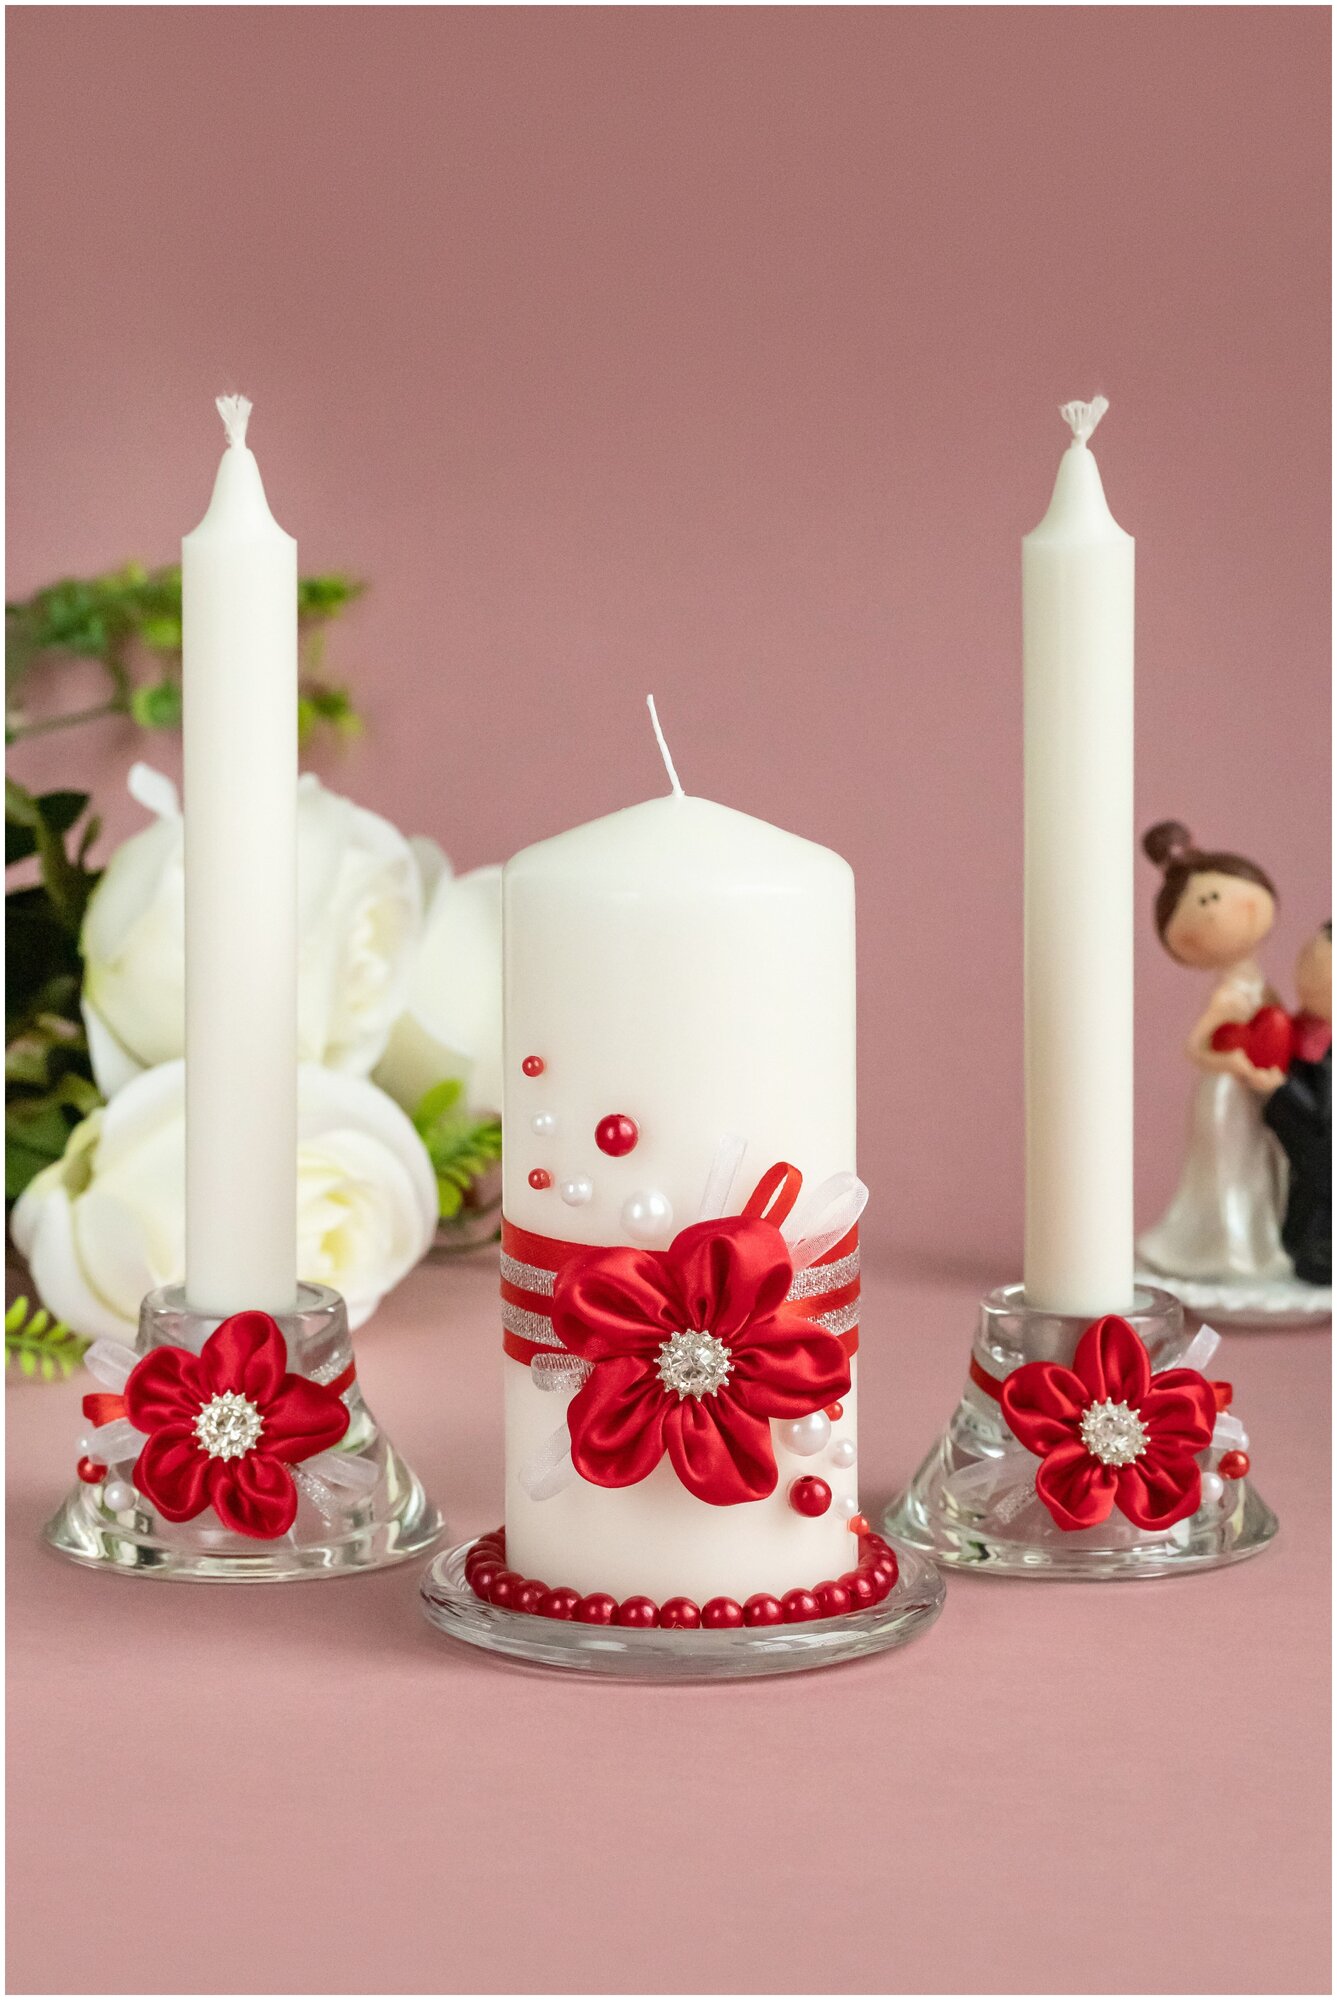 Свадебные свечи 